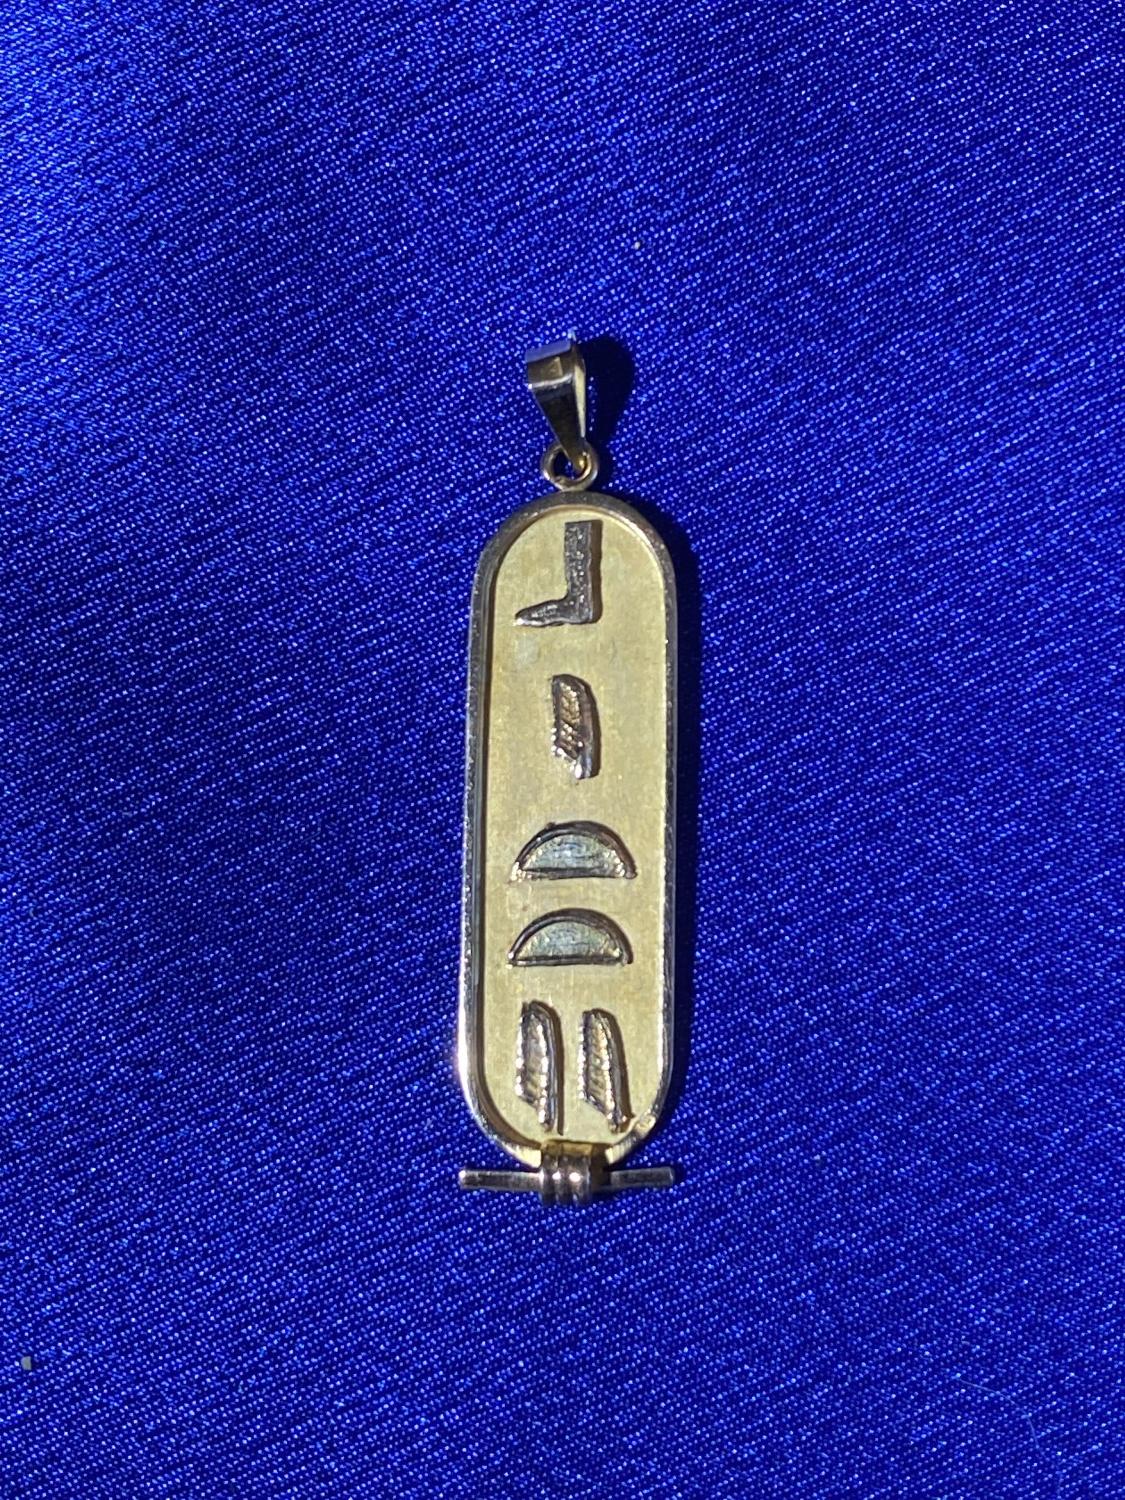 18k gold Egyptian pendant - 3.51 grams